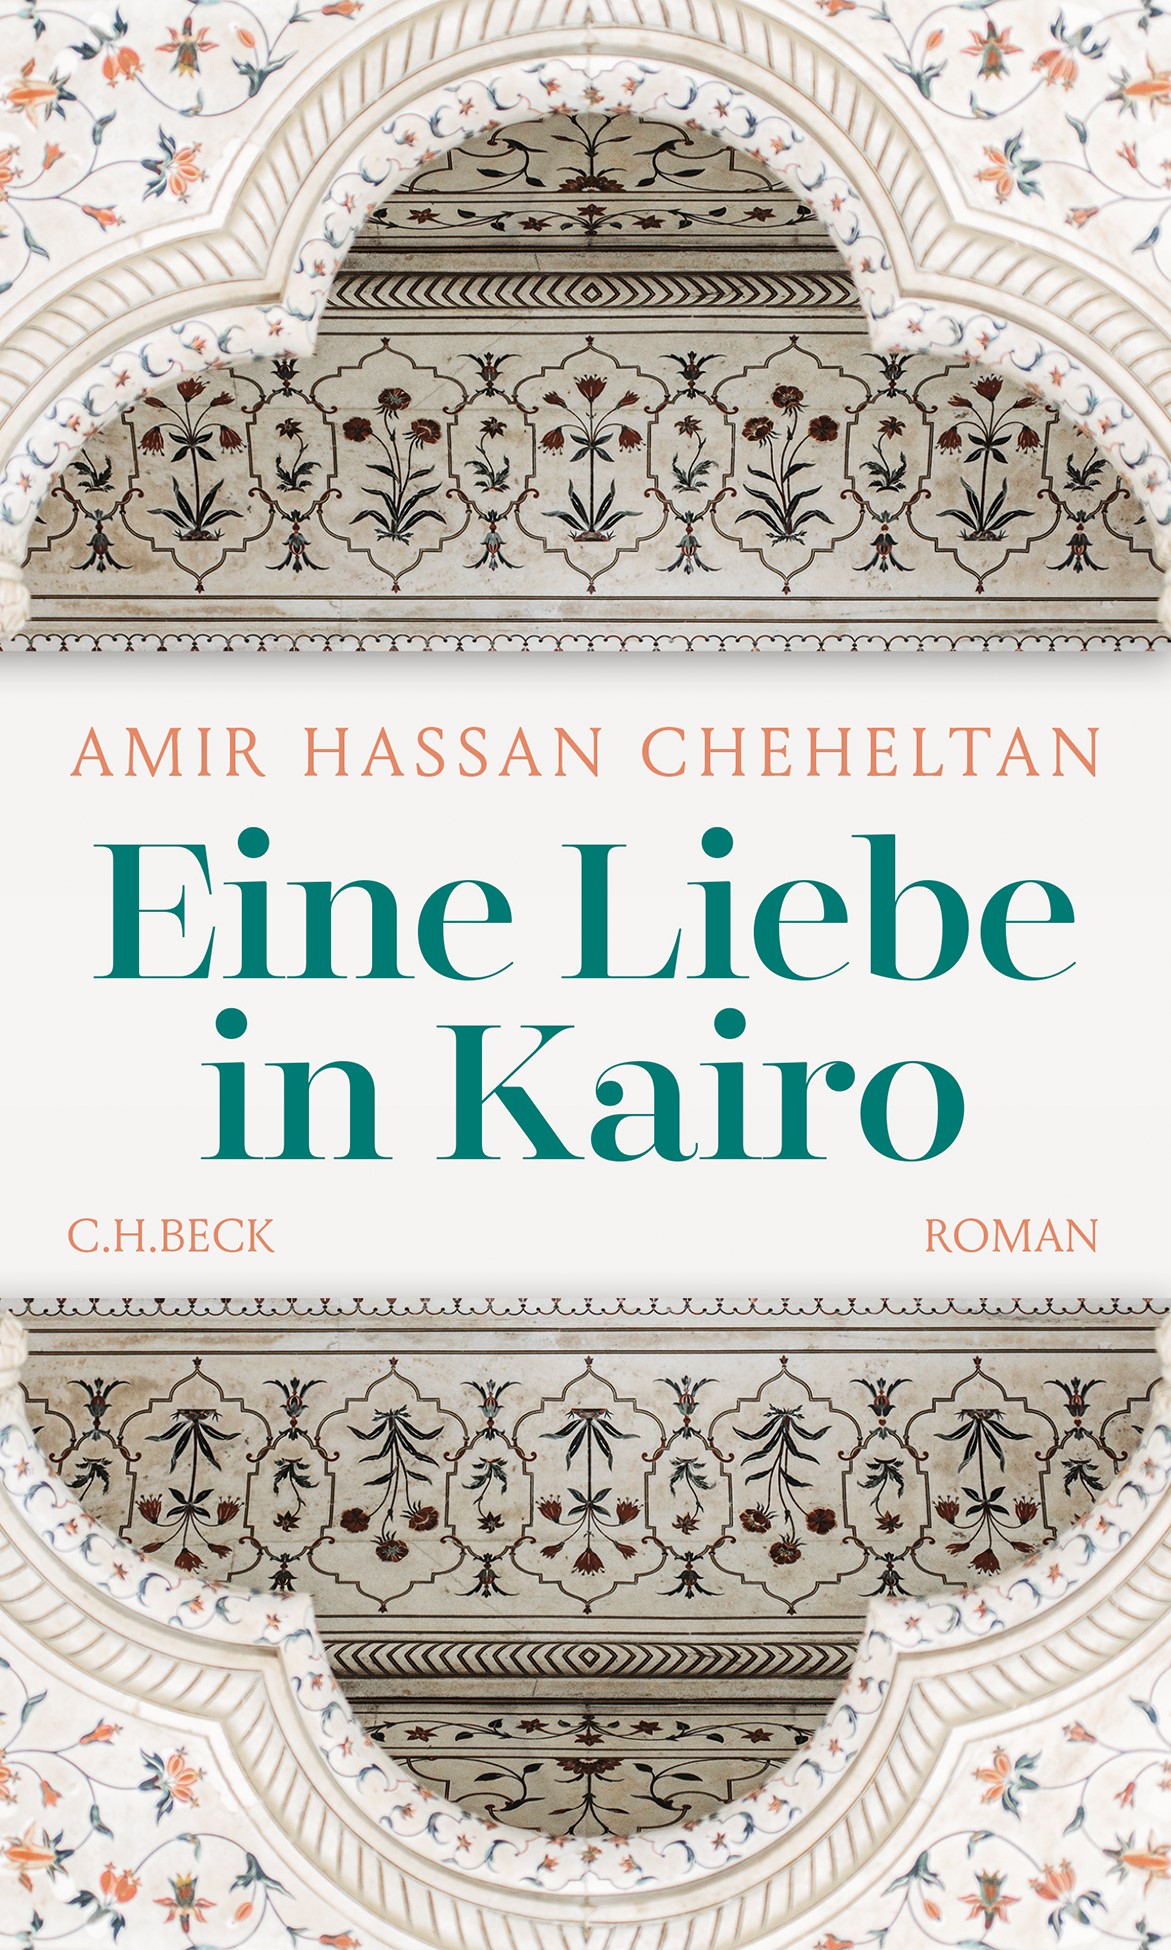 Cover von Amir Hassan Cheheltans "Eine Liebe in Cairo", aus dem Persischen übersetzt von Jutta Himmelreich und erschienen bei C. H. Beck (Quelle: C. H. Beck)